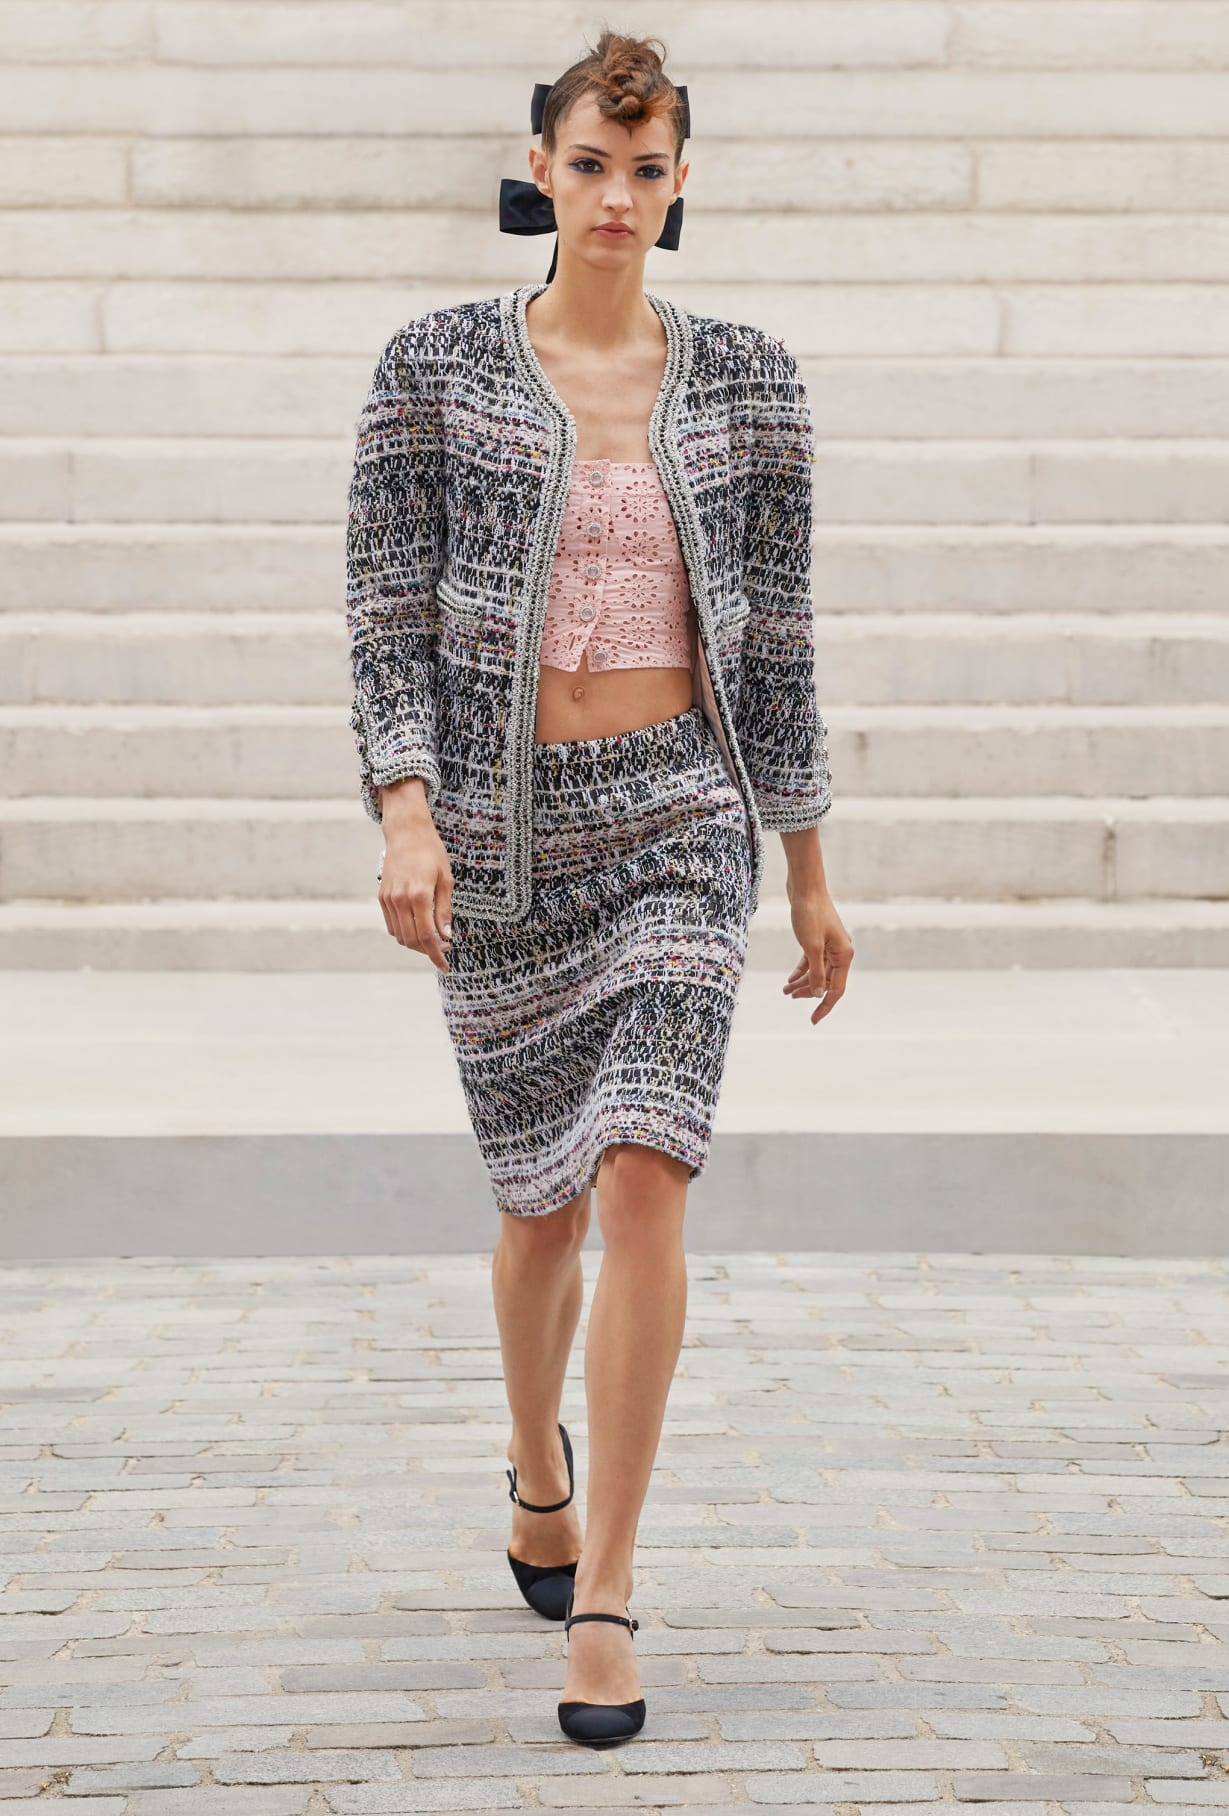 Chanel Haute Couture 2021: Sự tối giản của sàn diễn để tôn vinh trang phục  - Ảnh 11